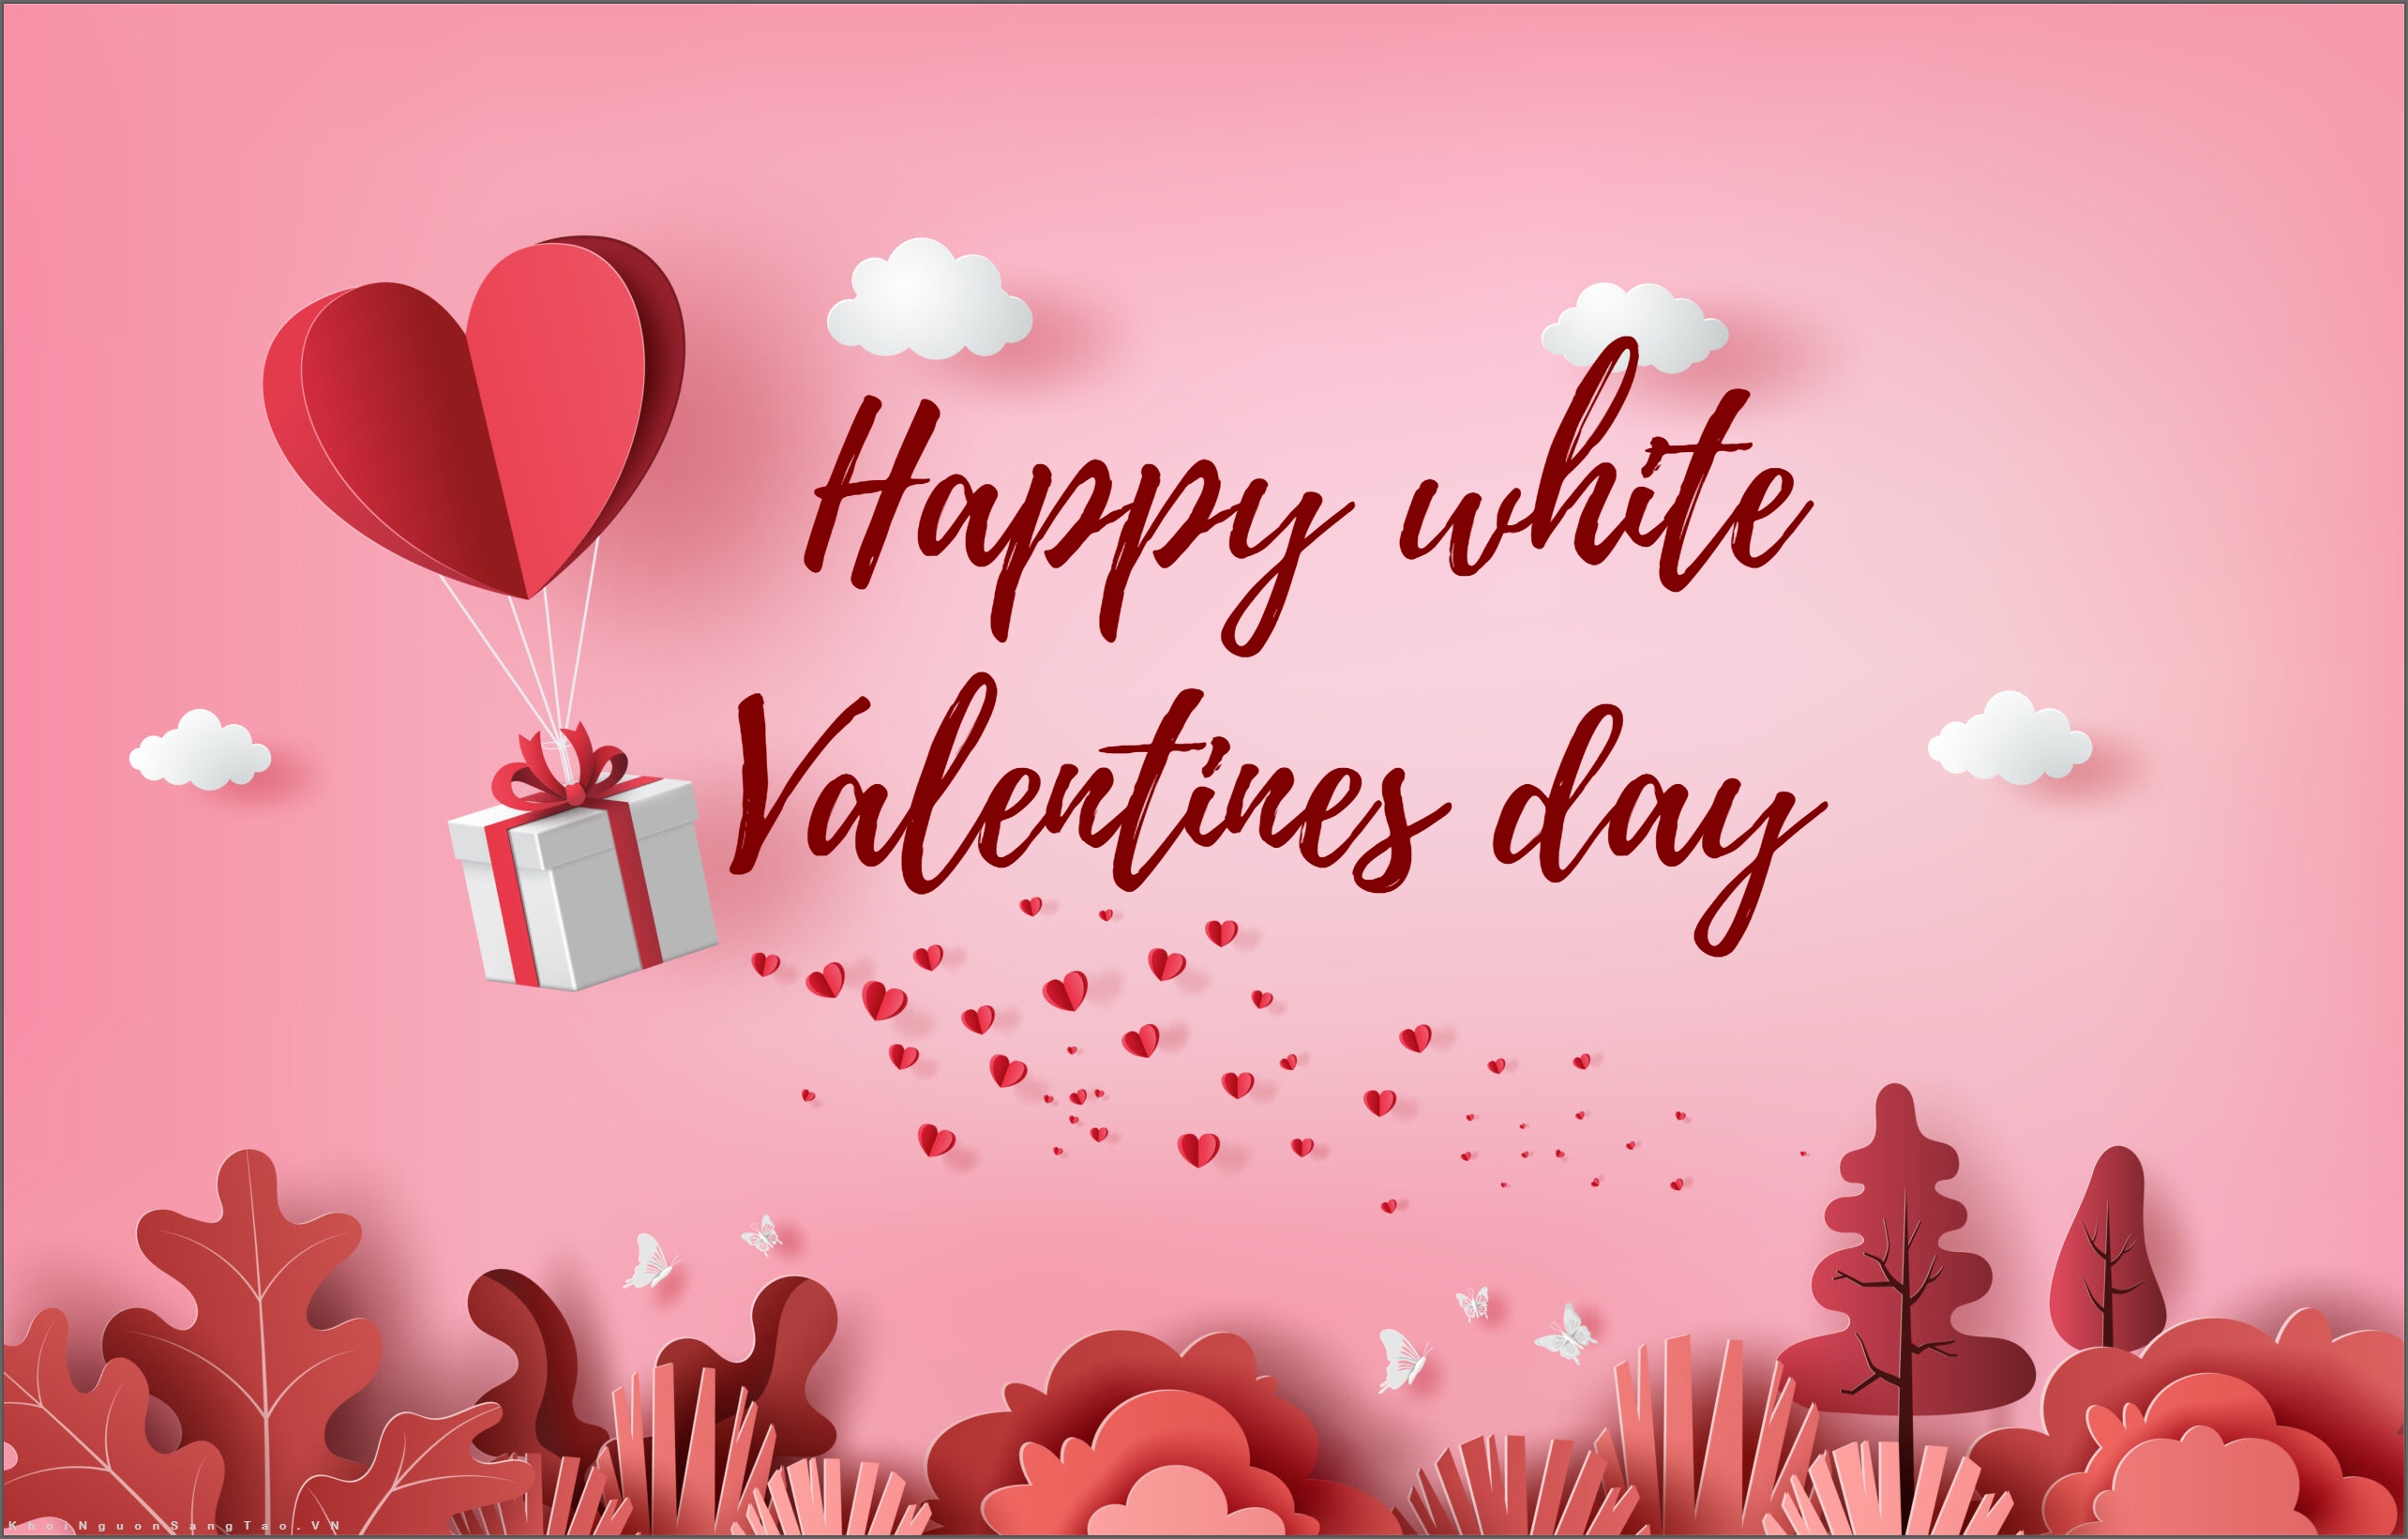 Bạn đang muốn tặng quà gì cho ngày Valentine trắng? Hãy đến với chúng tôi để tìm kiếm những món quà lãng mạn, độc đáo và ý nghĩa nhất để dành tặng cho người mình yêu.